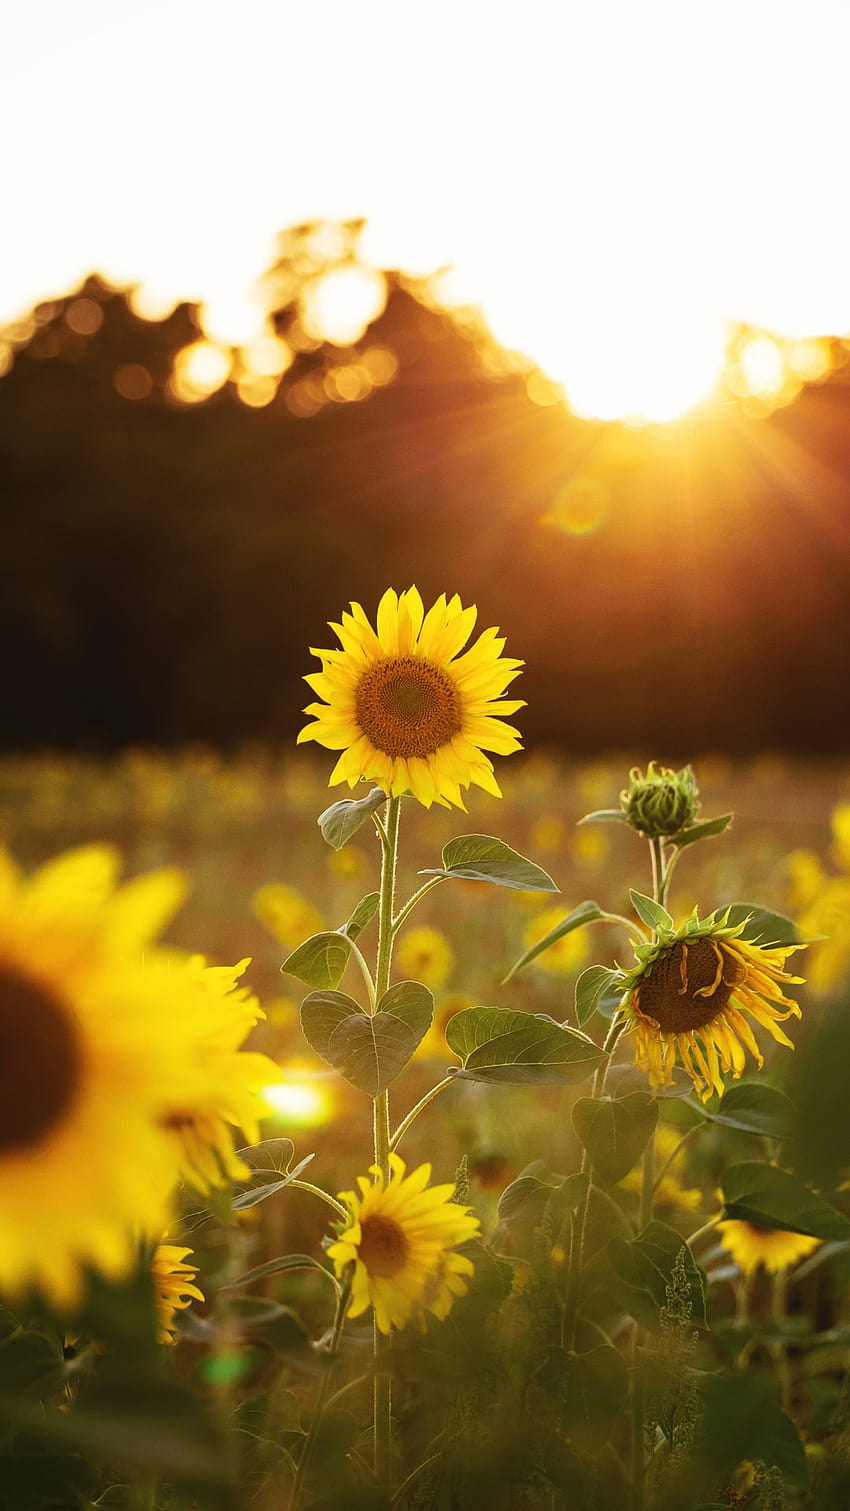 İphone Sunflower, bunga matahari biasa wallpaper ponsel HD